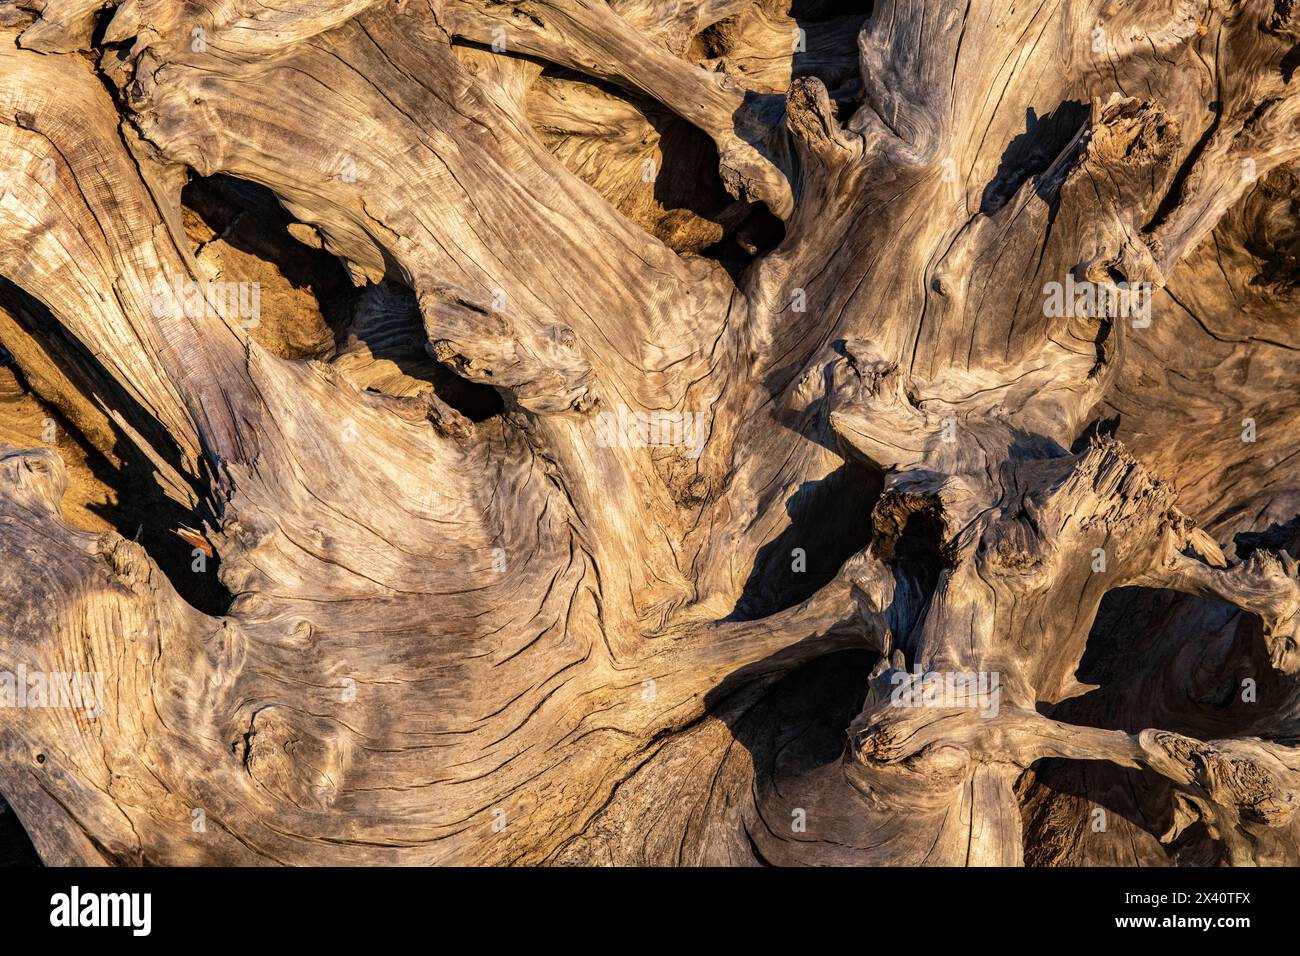 Gros plan, détail de bois flotté ensoleillé, tordu et séché dans le parc d'État Cape Disception ; long Beach, Washington, États-Unis d'Amérique Banque D'Images